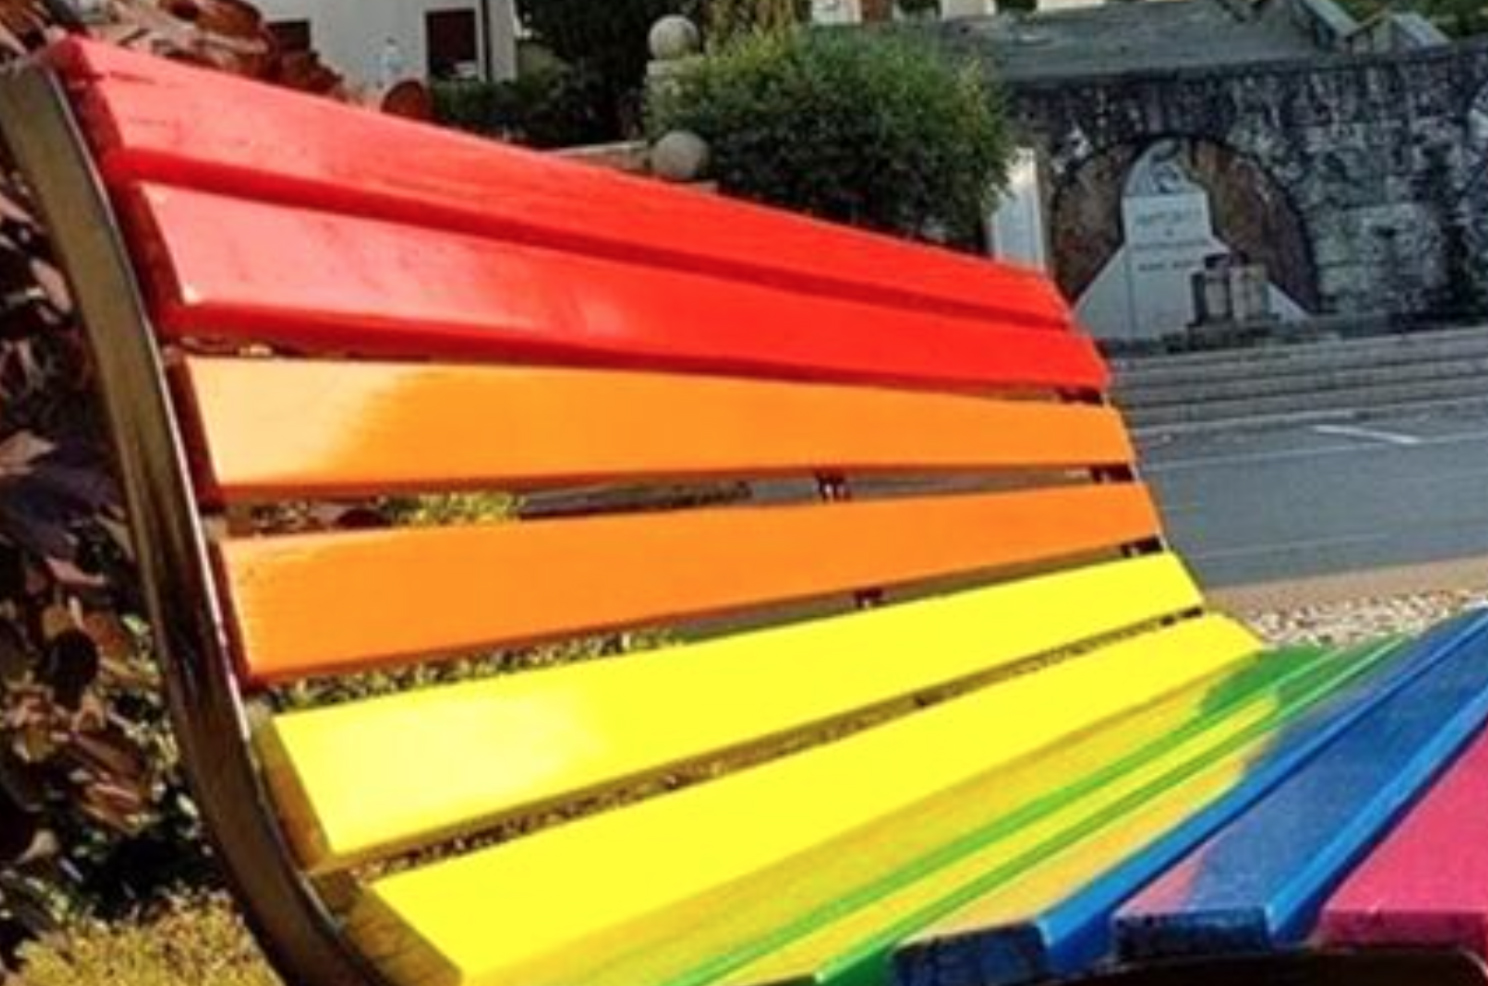 Panchine arcobaleno, l’inaccettabile strumentalizzazione di battaglie anti-discriminazione 1